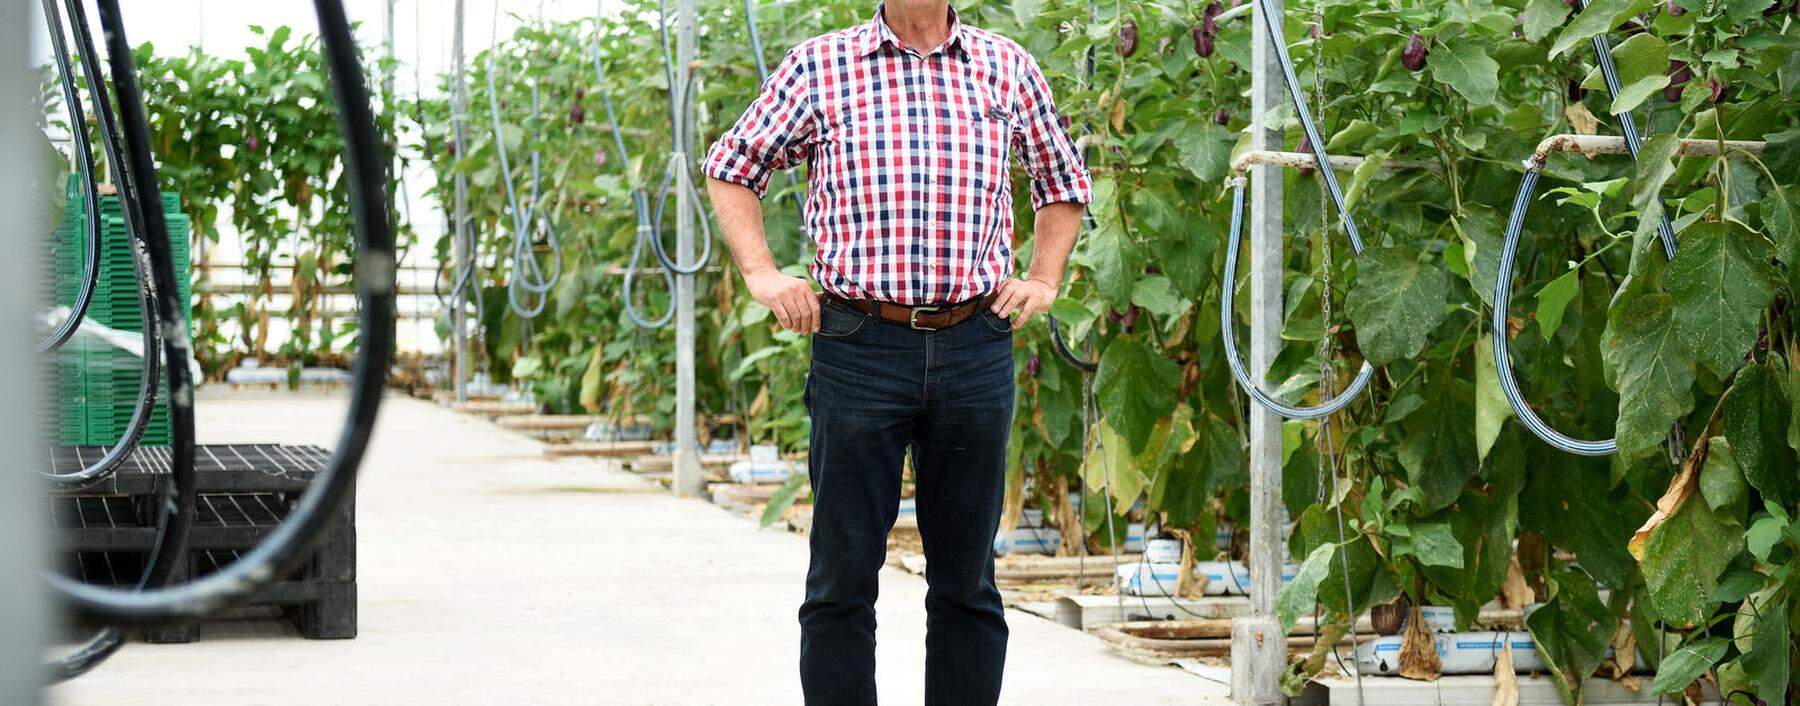 Der Simmeringer Gärtner Karl Herret setzt in seinem Glashaus auf Sortenvielfalt bei Melanzani.